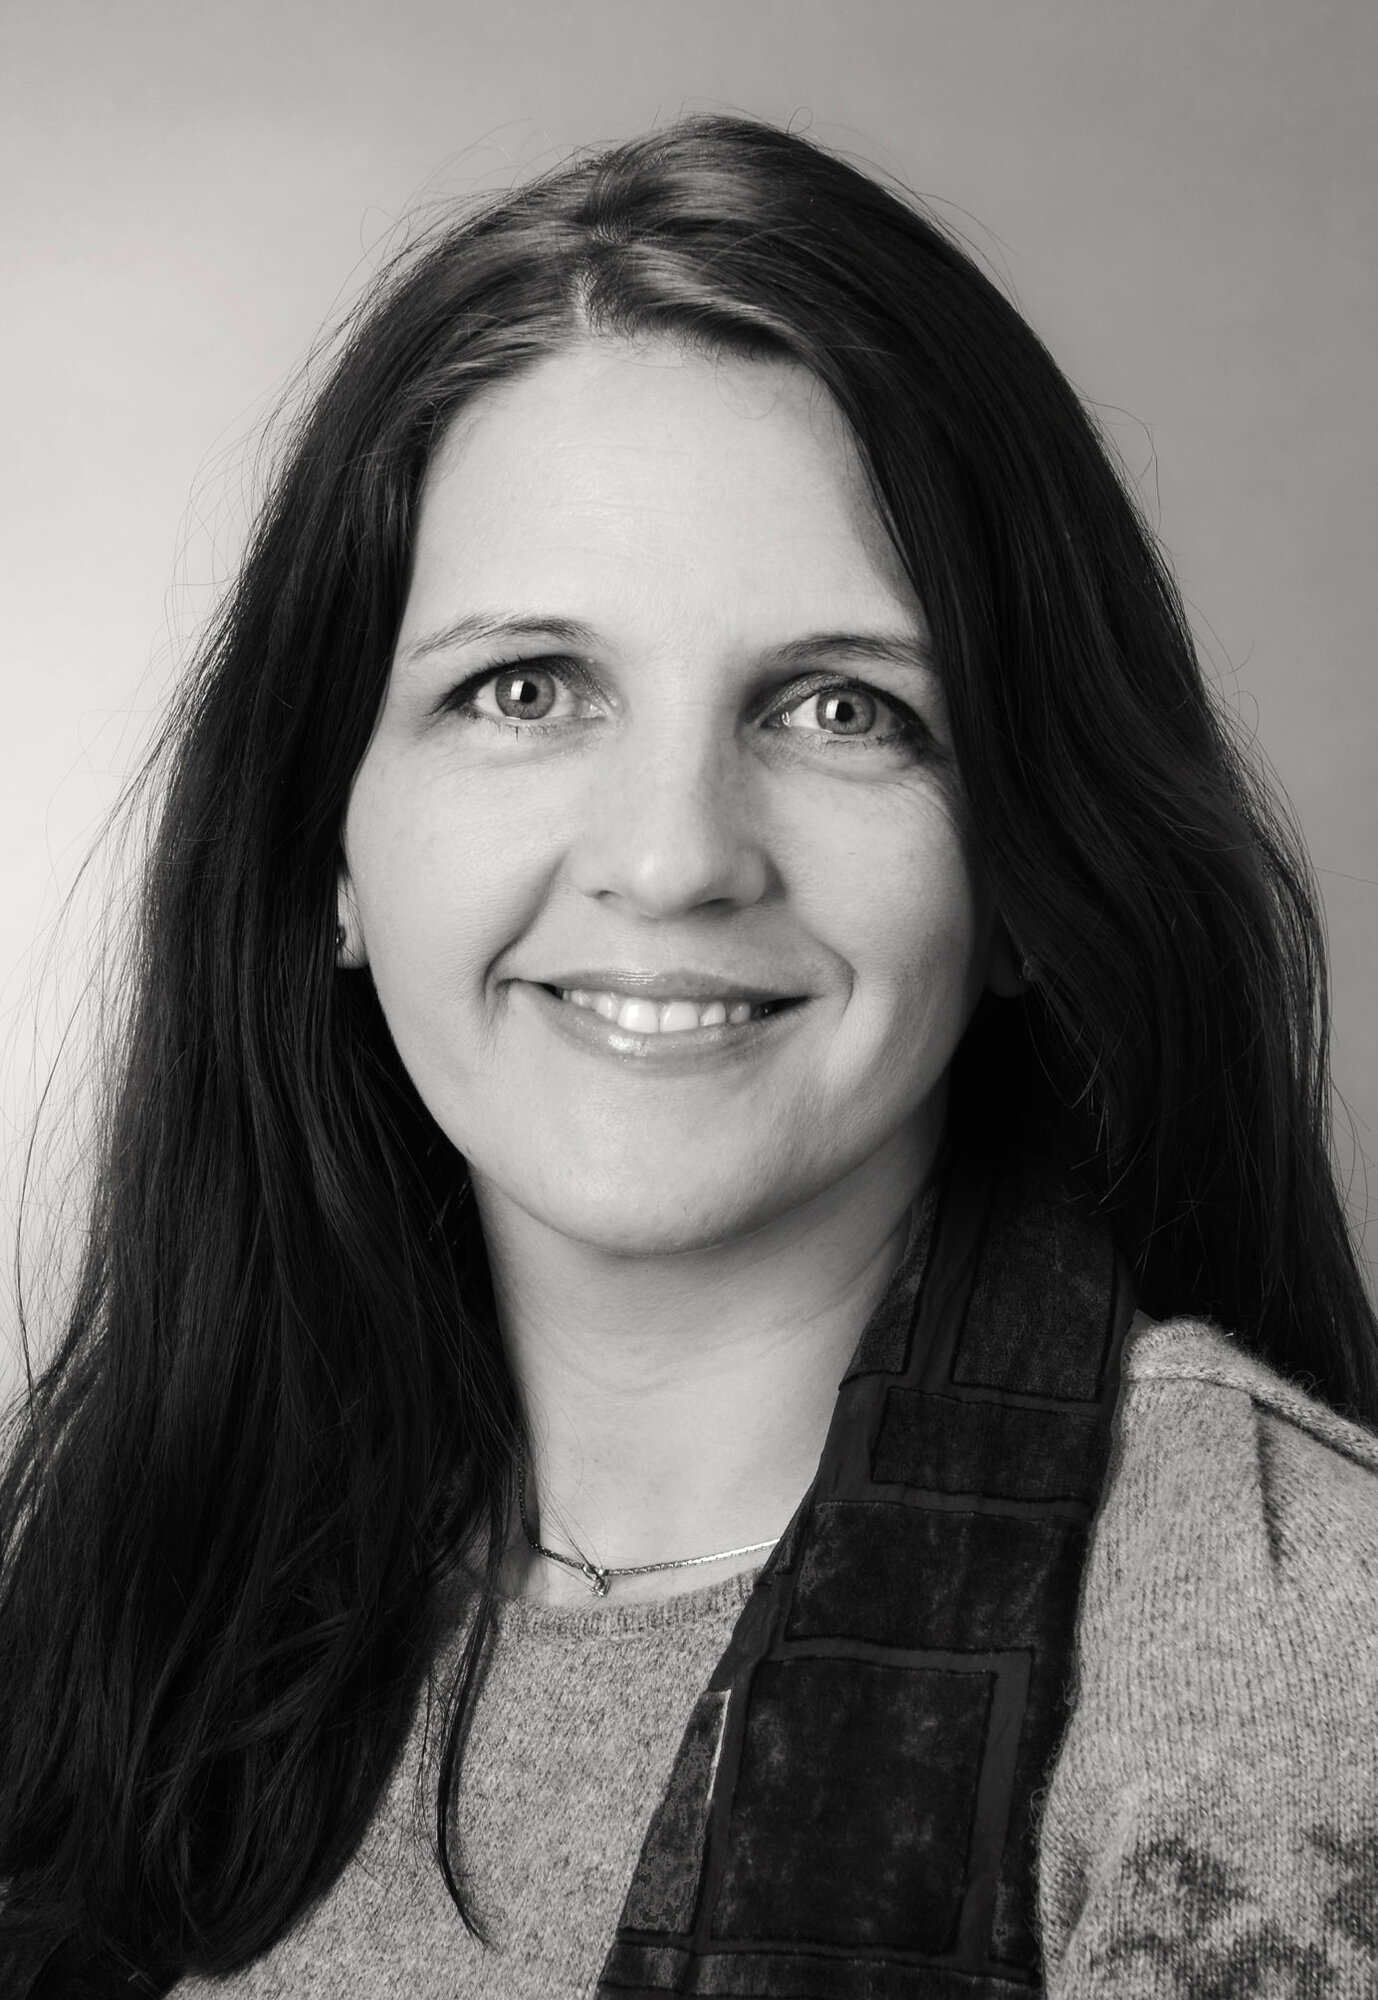  Irene Aasmul er forsker ved Universitetet i Bergen og har skrevet master om sykepleieres erfaringer med HLR minus. 